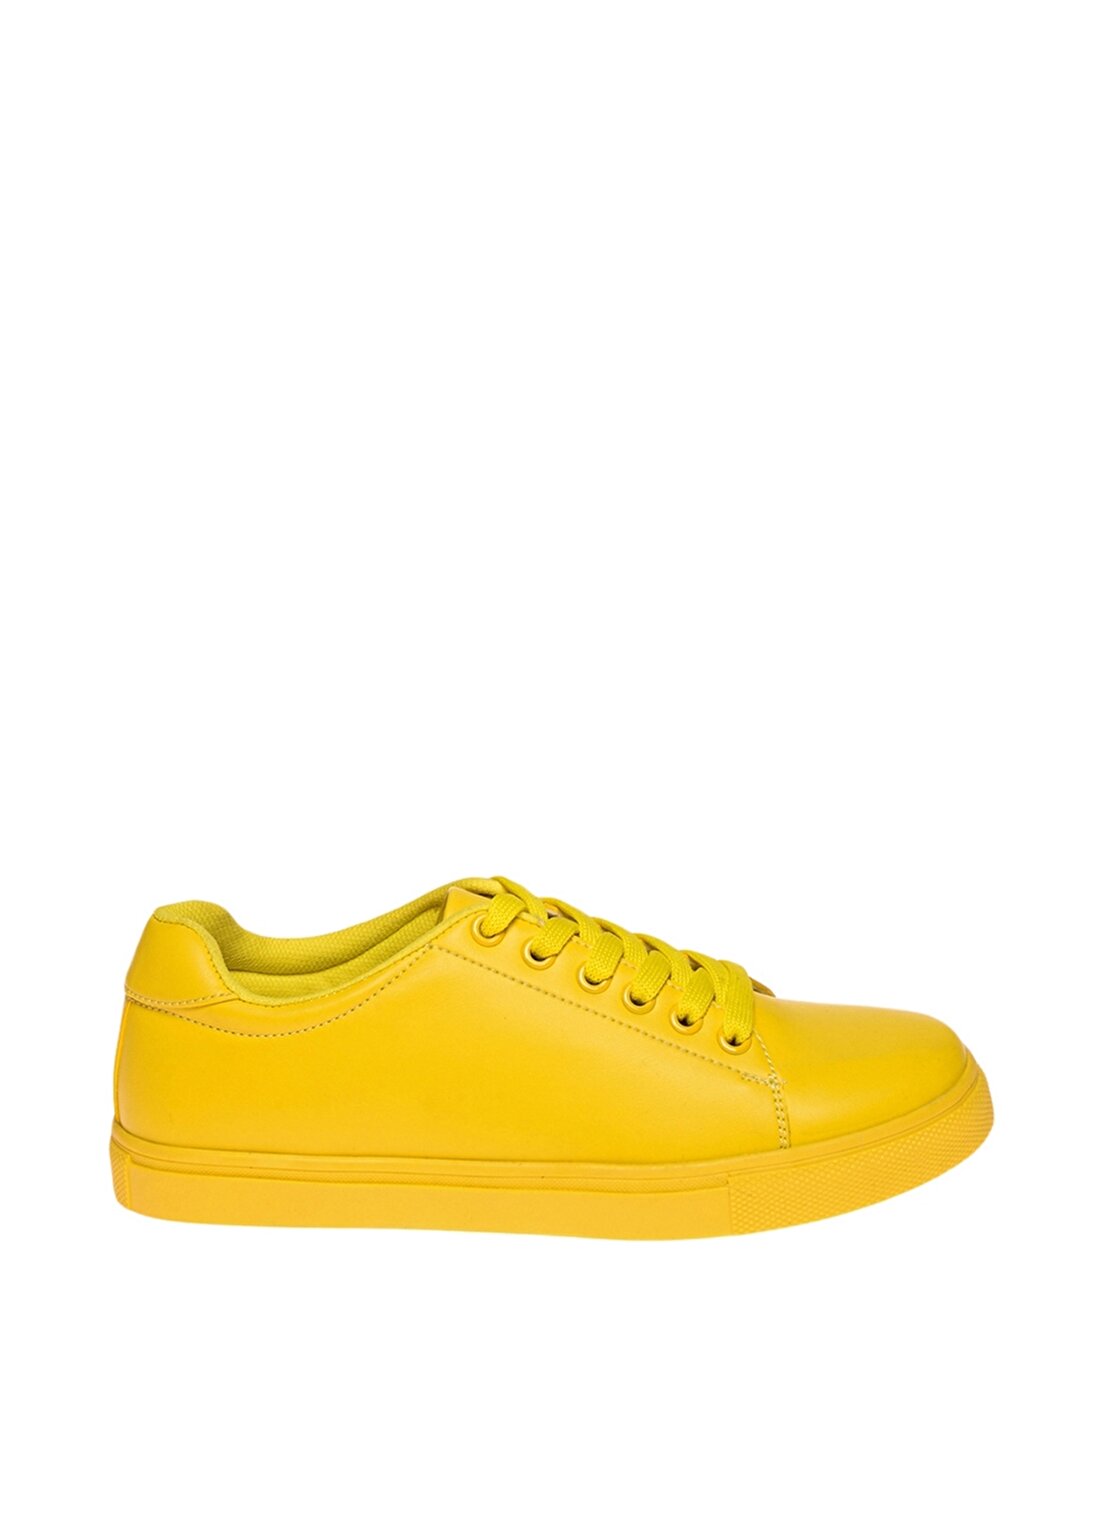 Limon Koşu Ayakkabısı